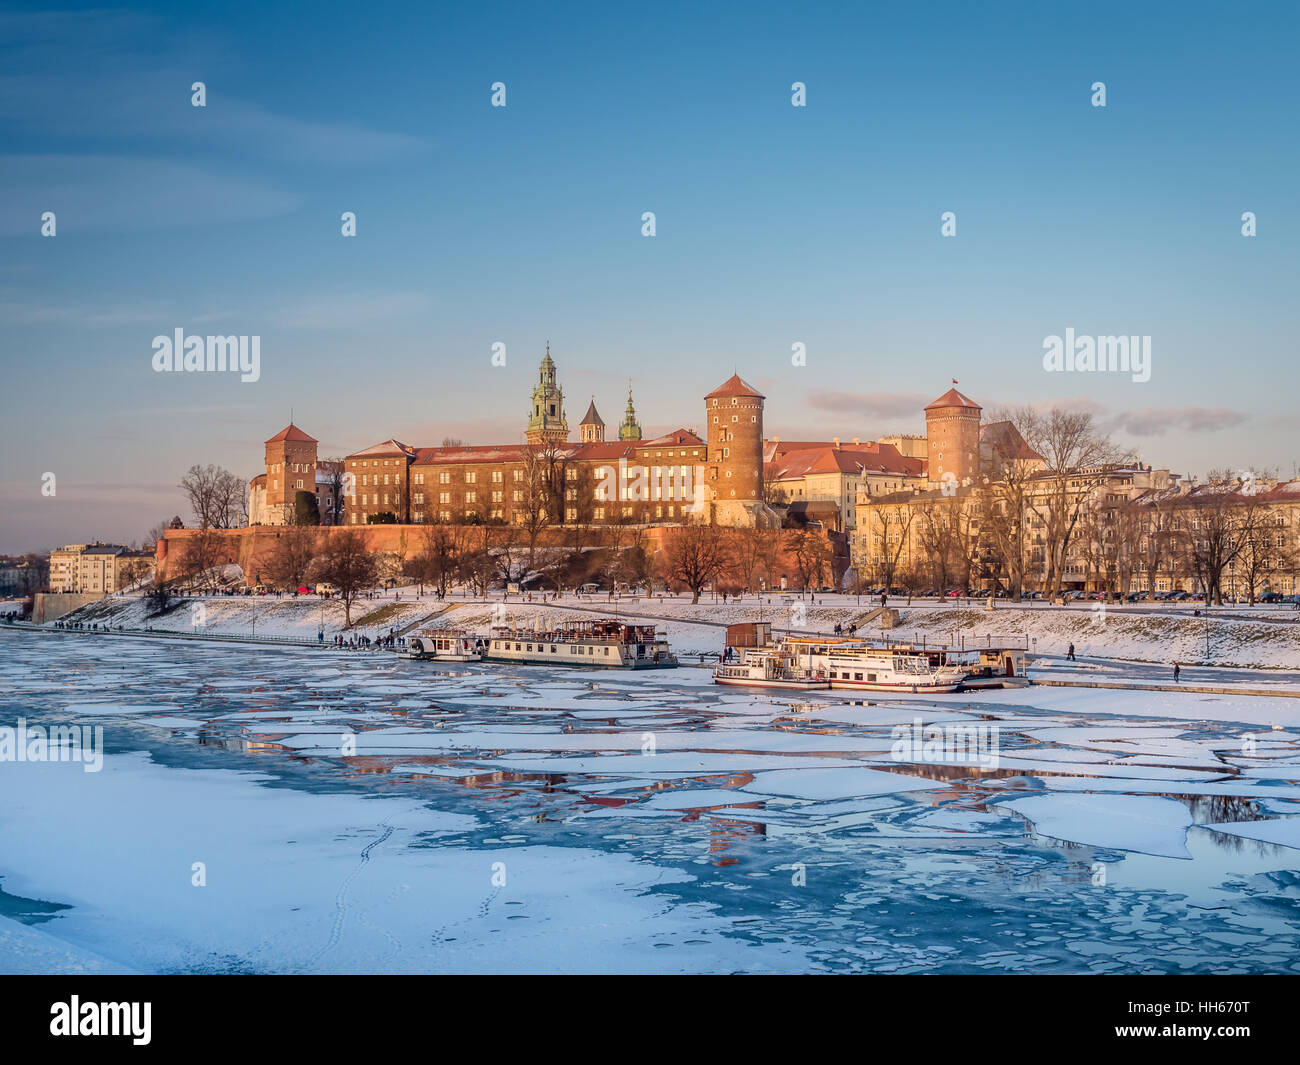 Castello Reale di Wawel nel periodo invernale con glaçon sul fiume Vistola, Cracovia - Polonia Foto Stock